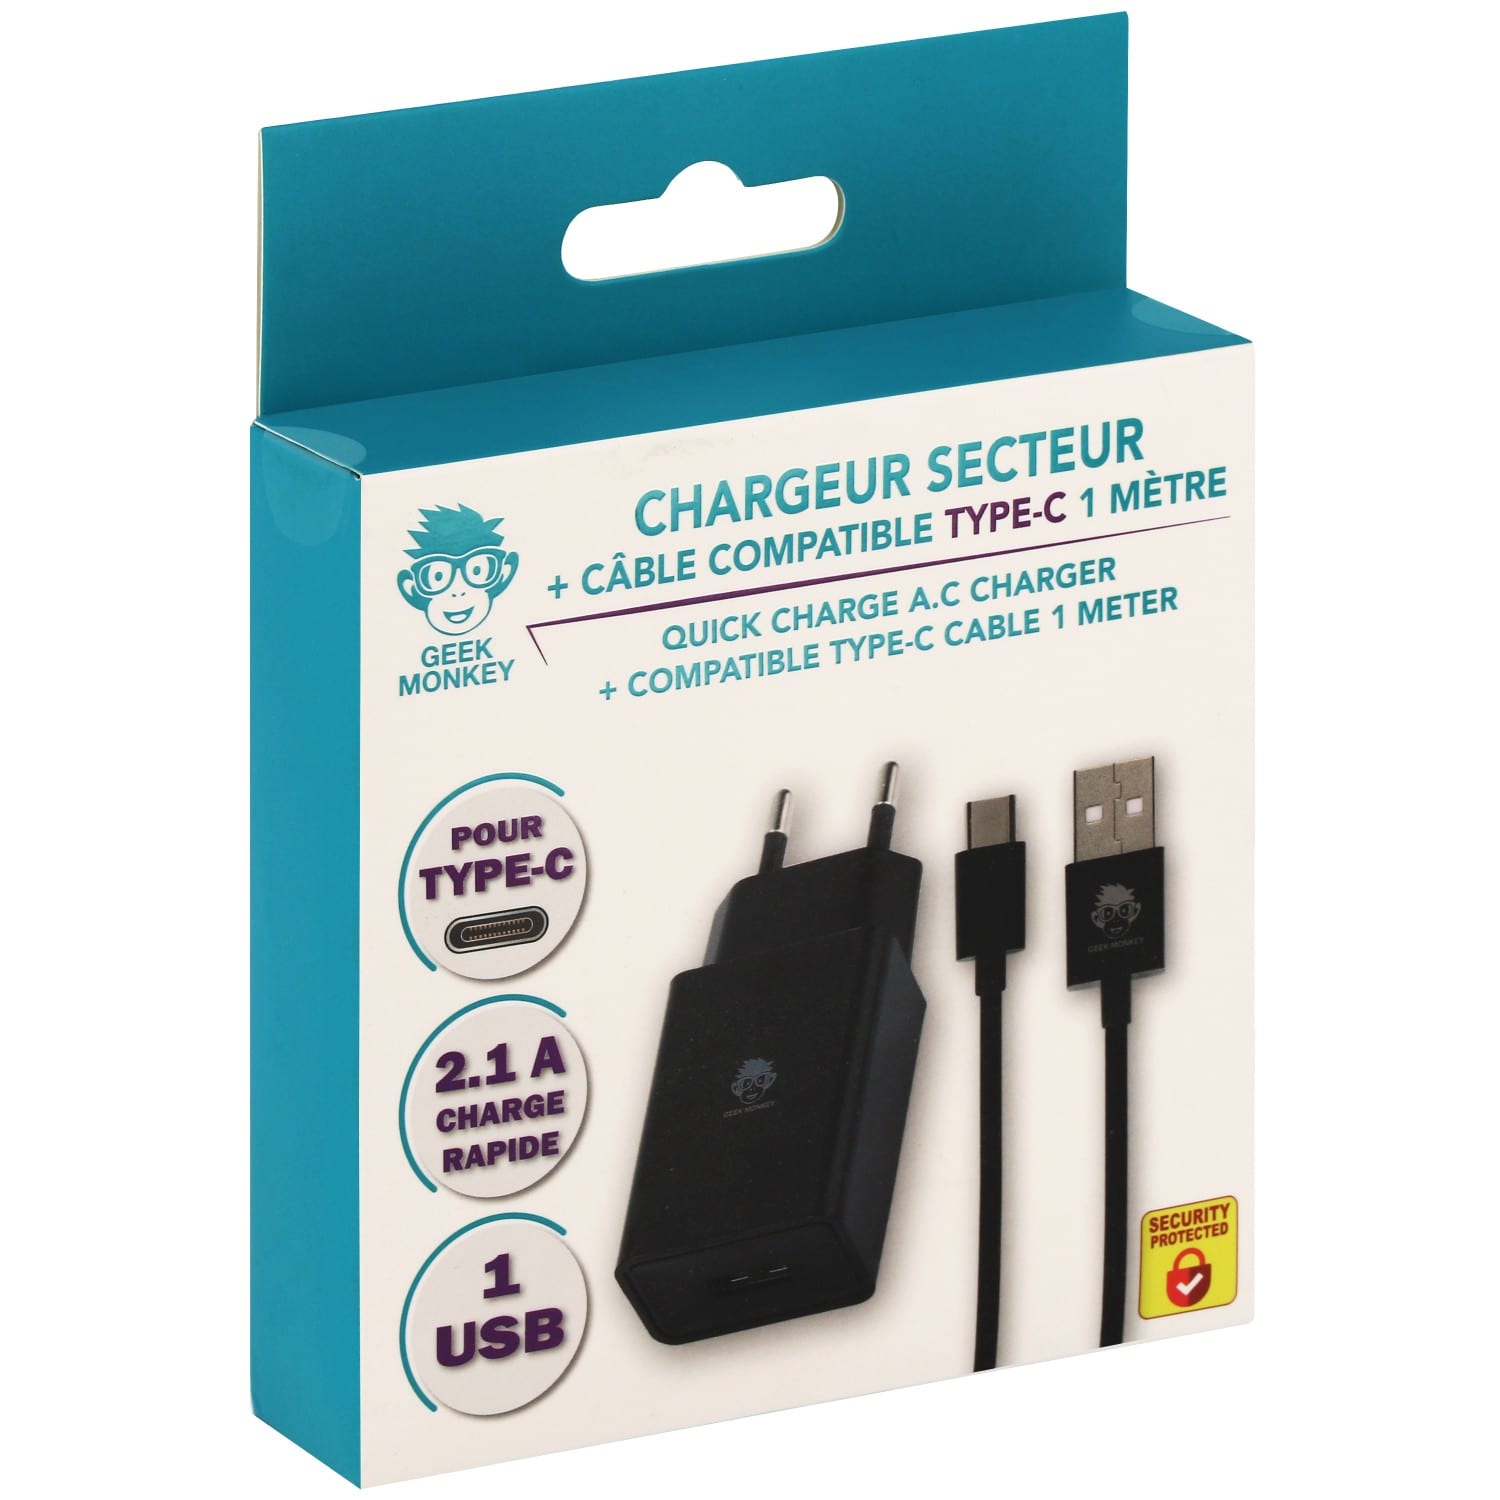 Chargeur GEEK MONKEY secteur USB-A 2.1 + câble compatible USB-C - 1 mètre -  Noir